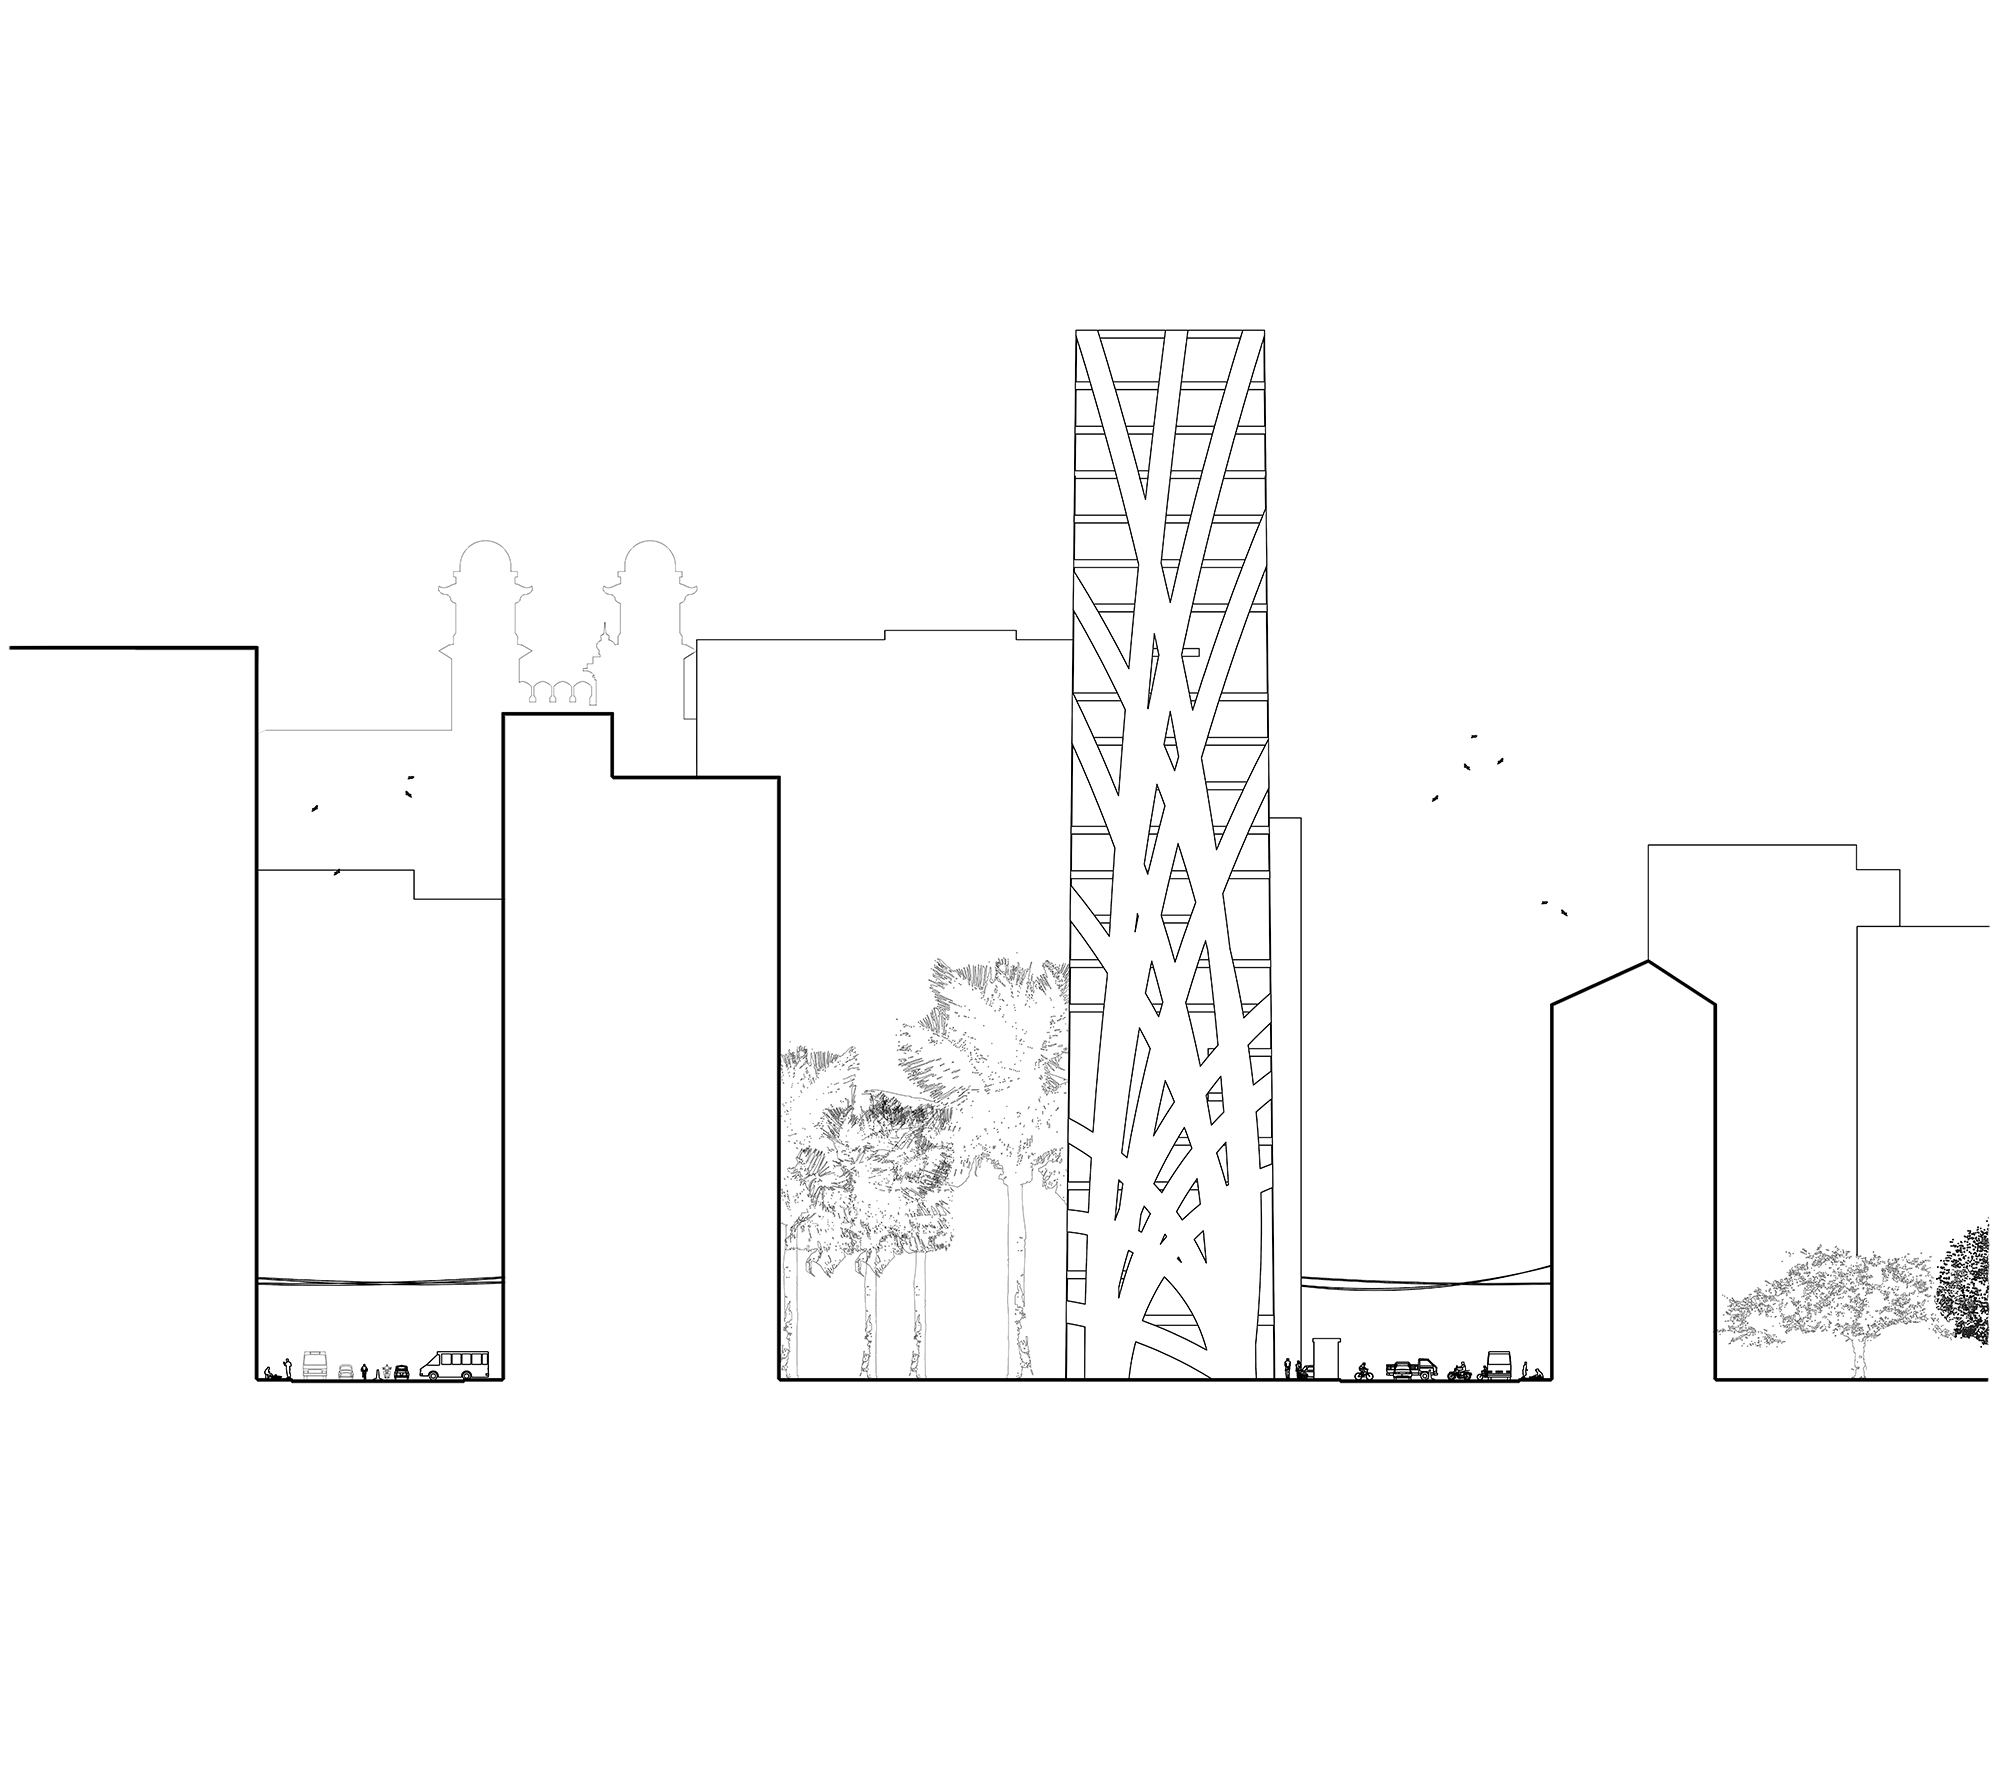 Architektur_offizin-a_Projekte_Wohnen_Gewerbe_Mumbaiturm_02.jpg